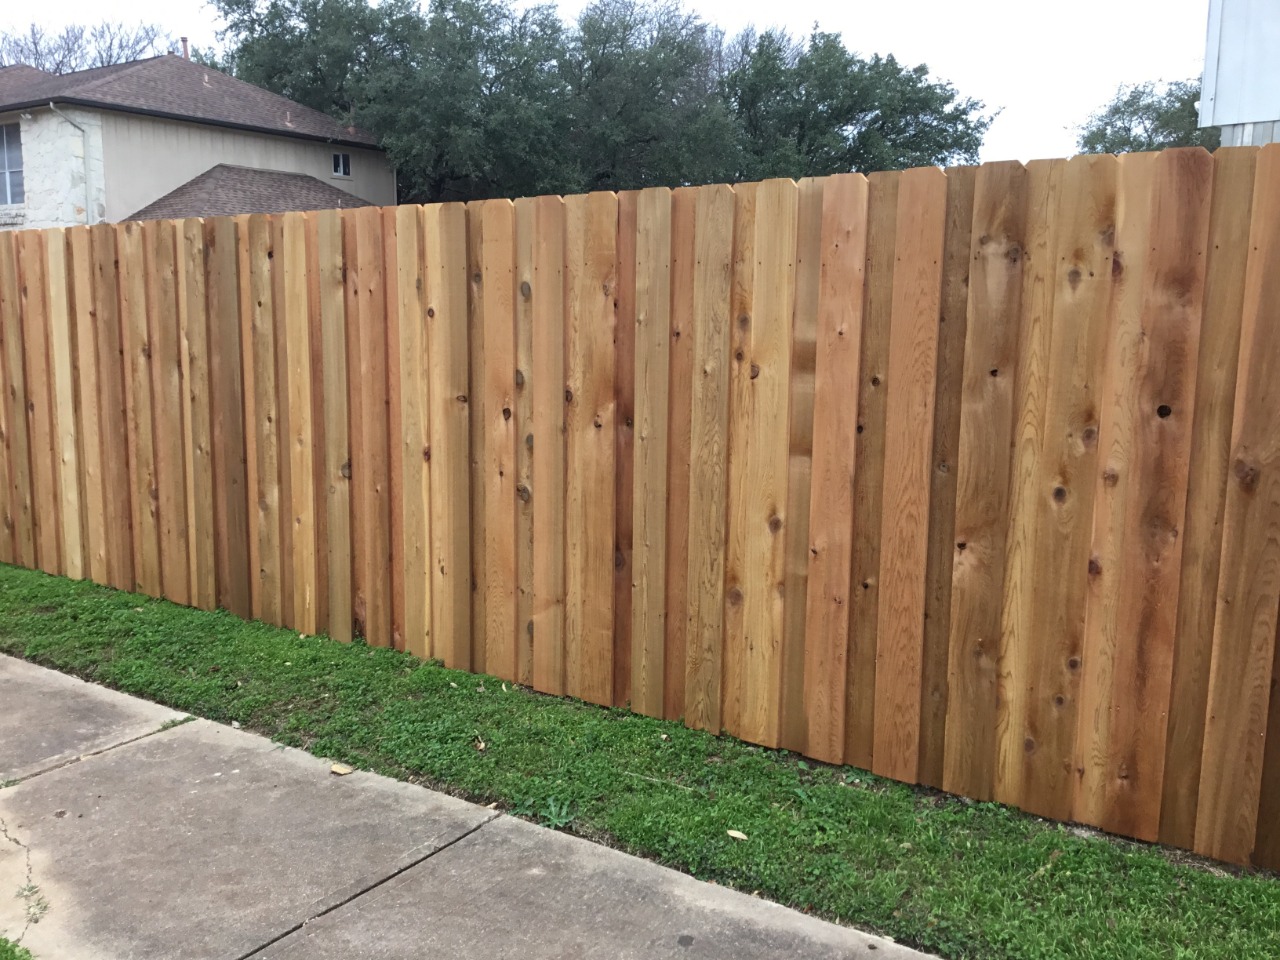 Six foot wooden board on board fence